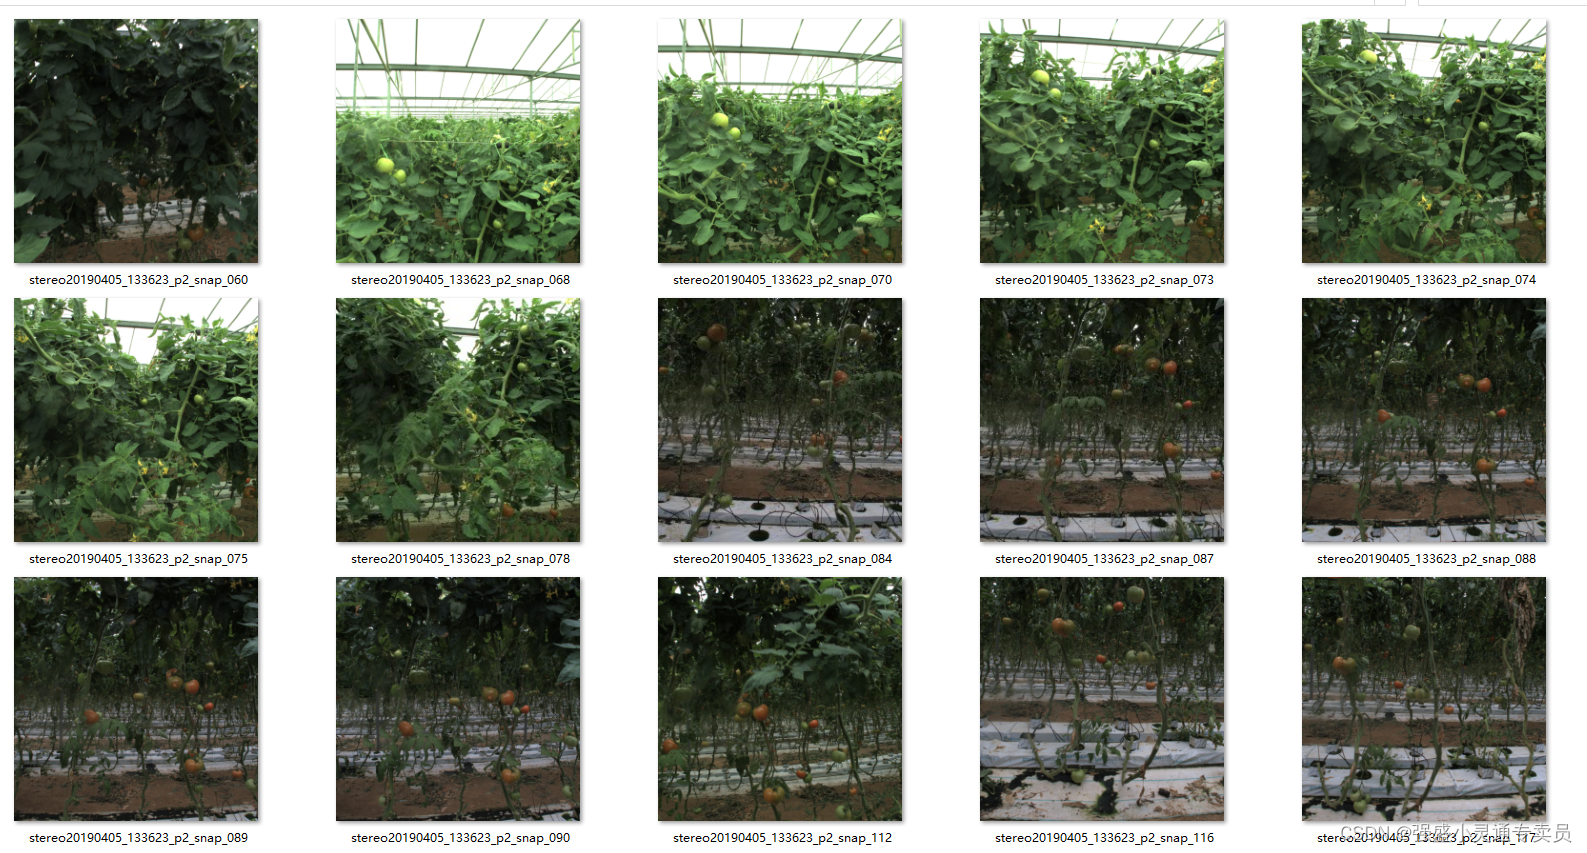 【目标检测】西红柿成熟度数据集三类标签原始数据集280张